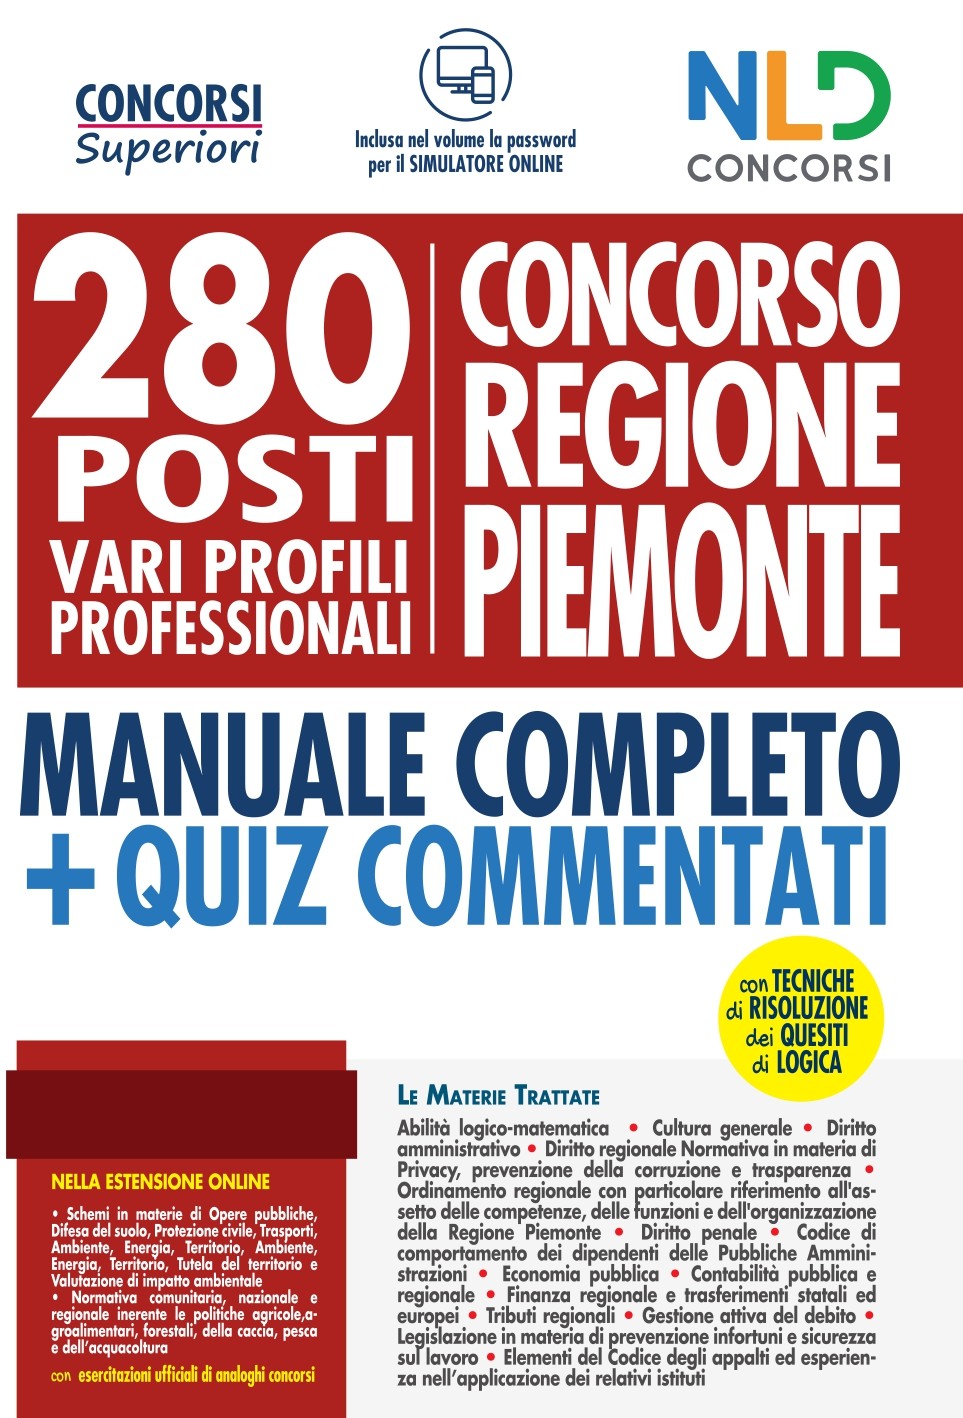 Concorso Regione Piemonte: 280 Posti Vari profili Professionali - Manuale Completo + Quiz Commentati